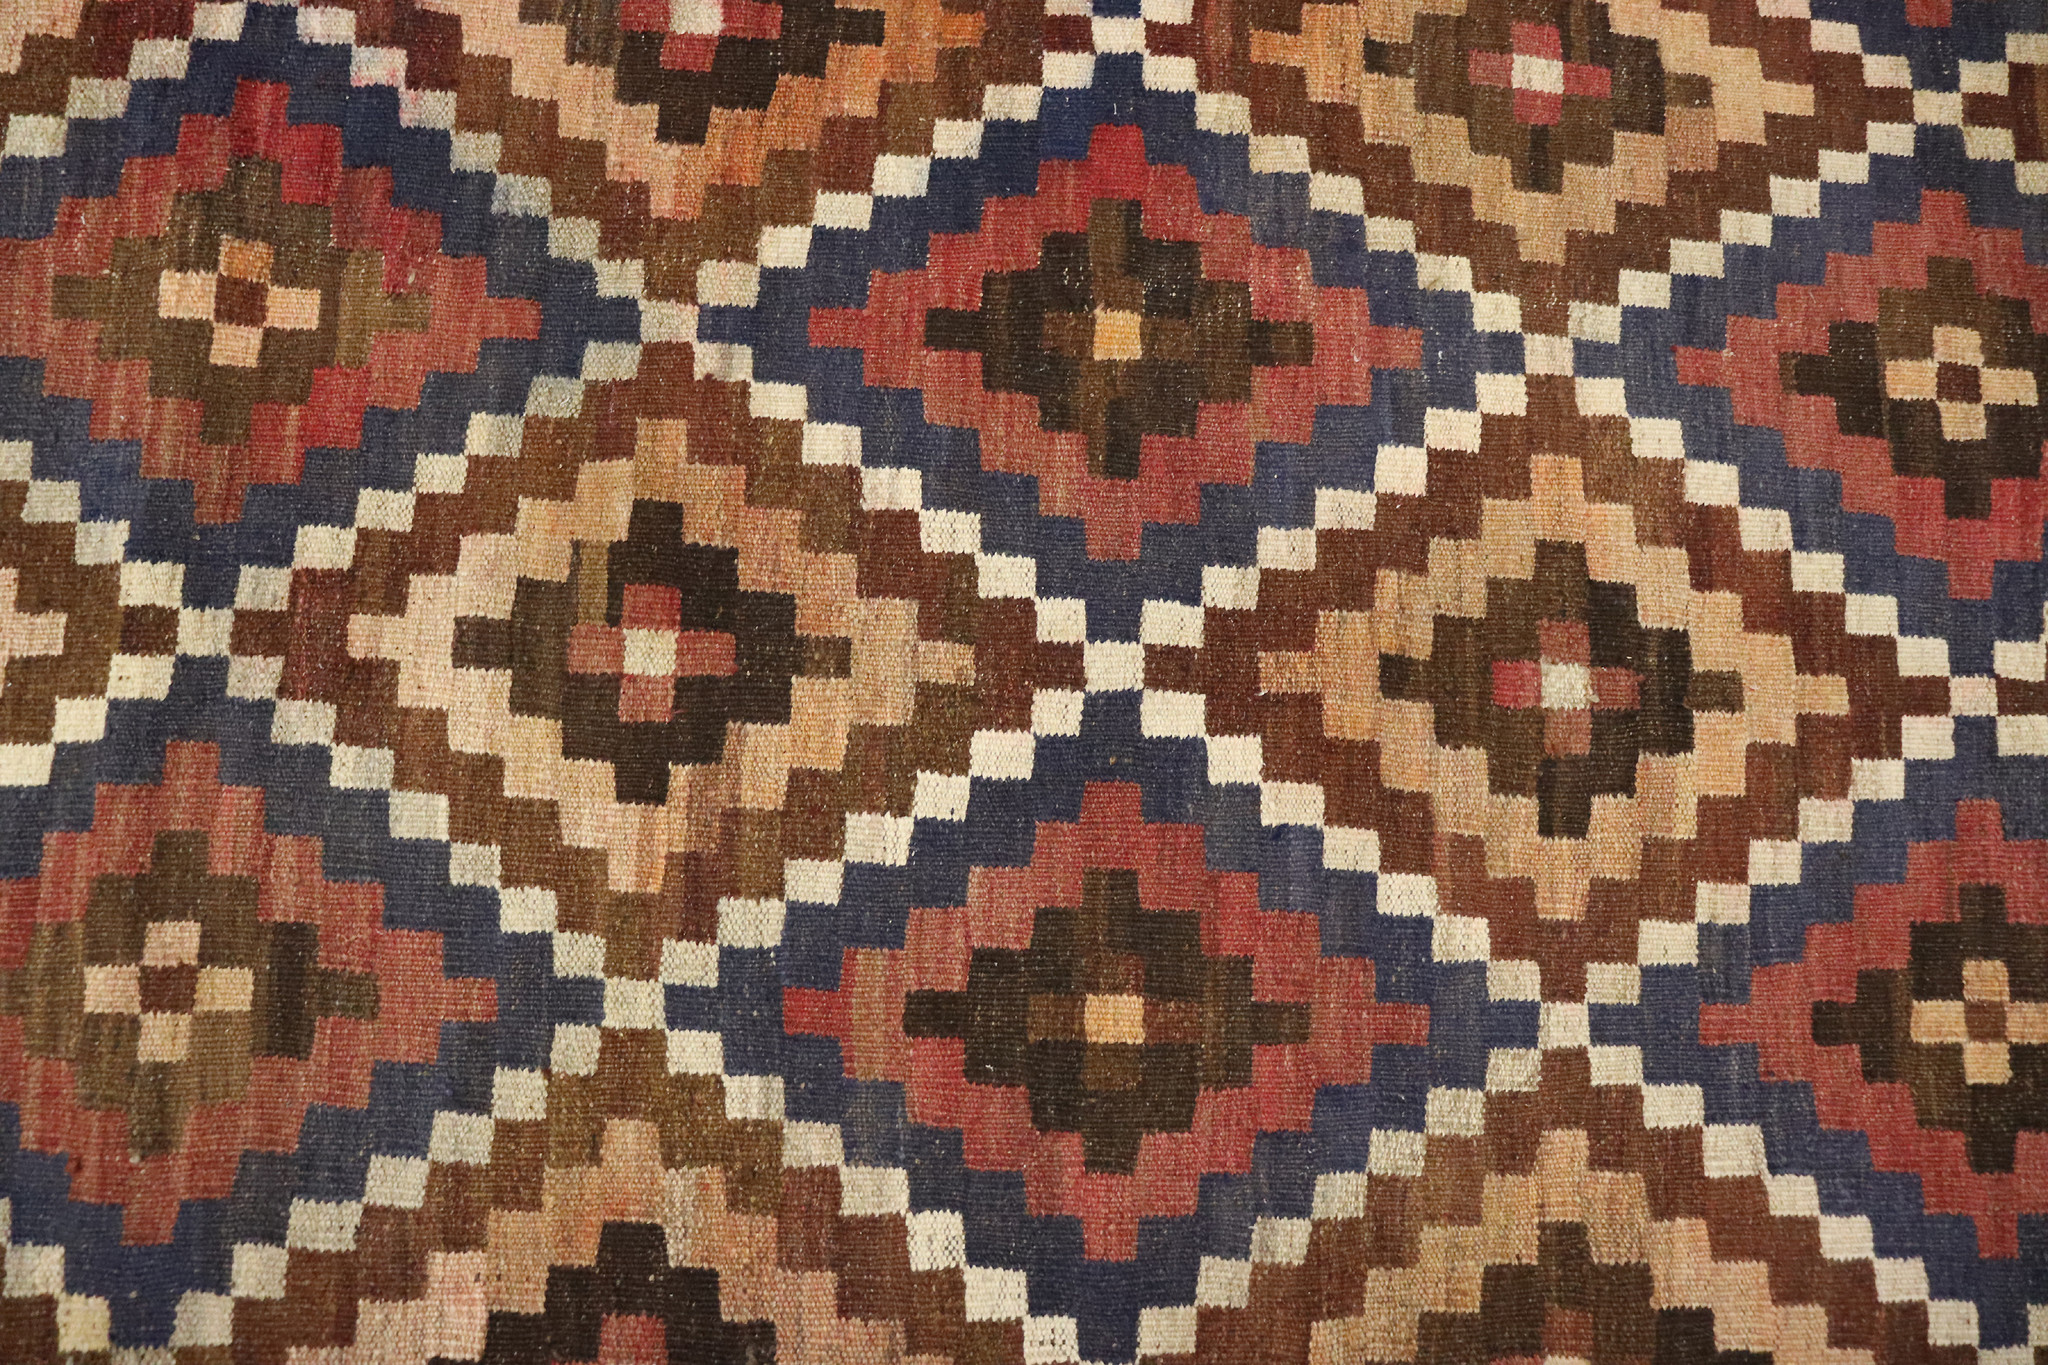 300x210    cm Afghan natural colors nomadic Kilim rug  No:  - 245